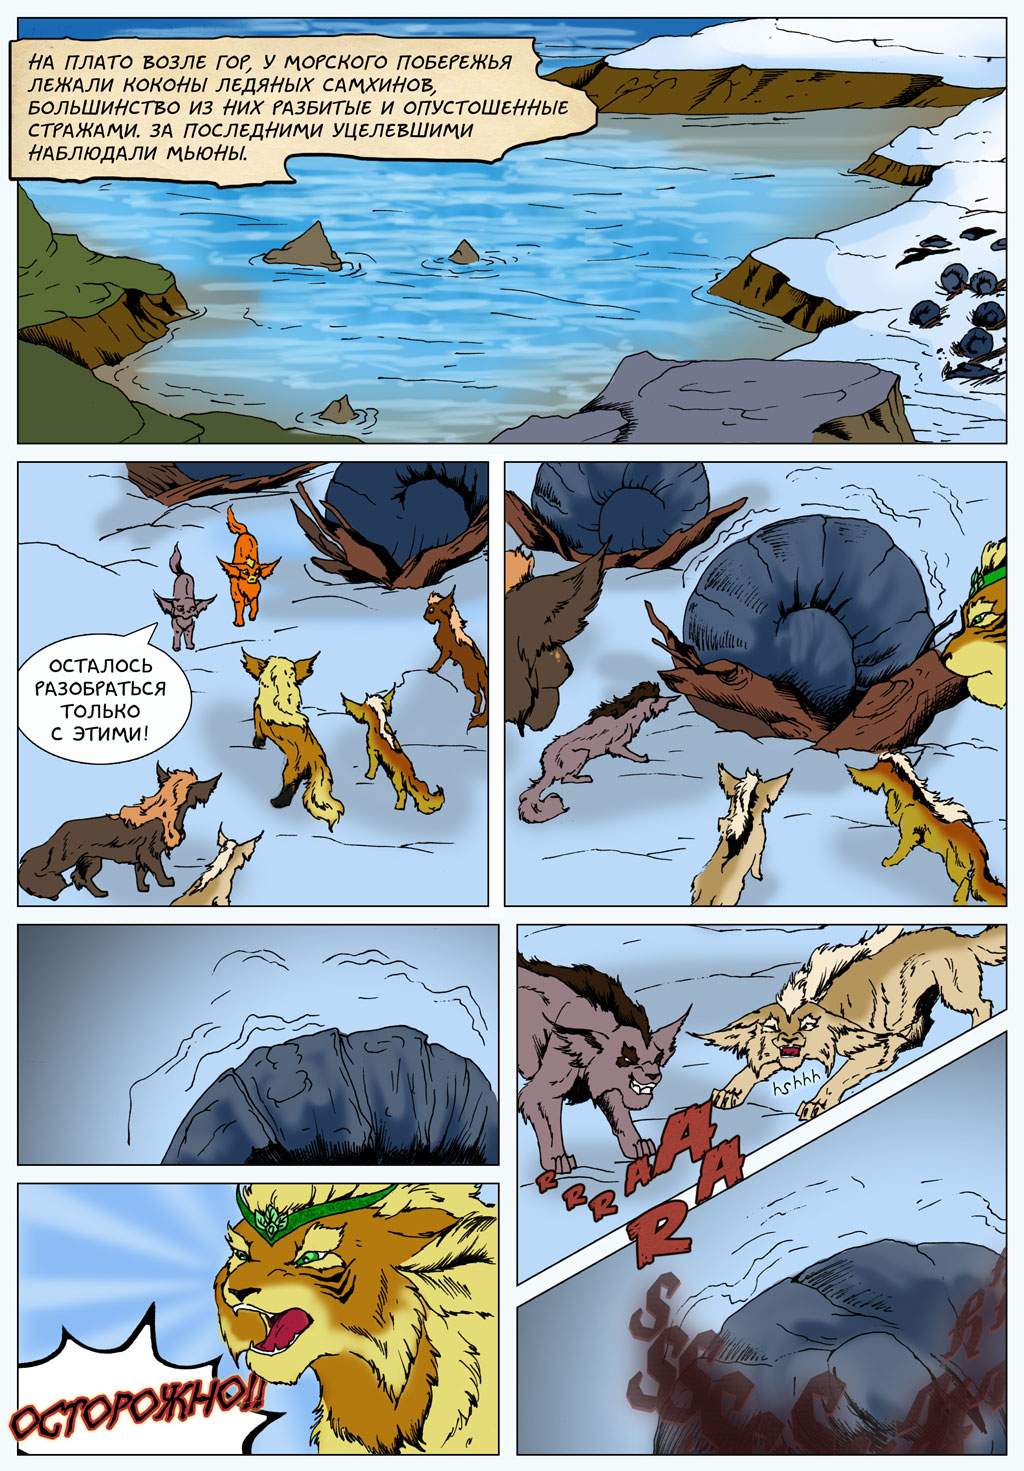 Комикс "Битва за Потаенный мир": выпуск №66